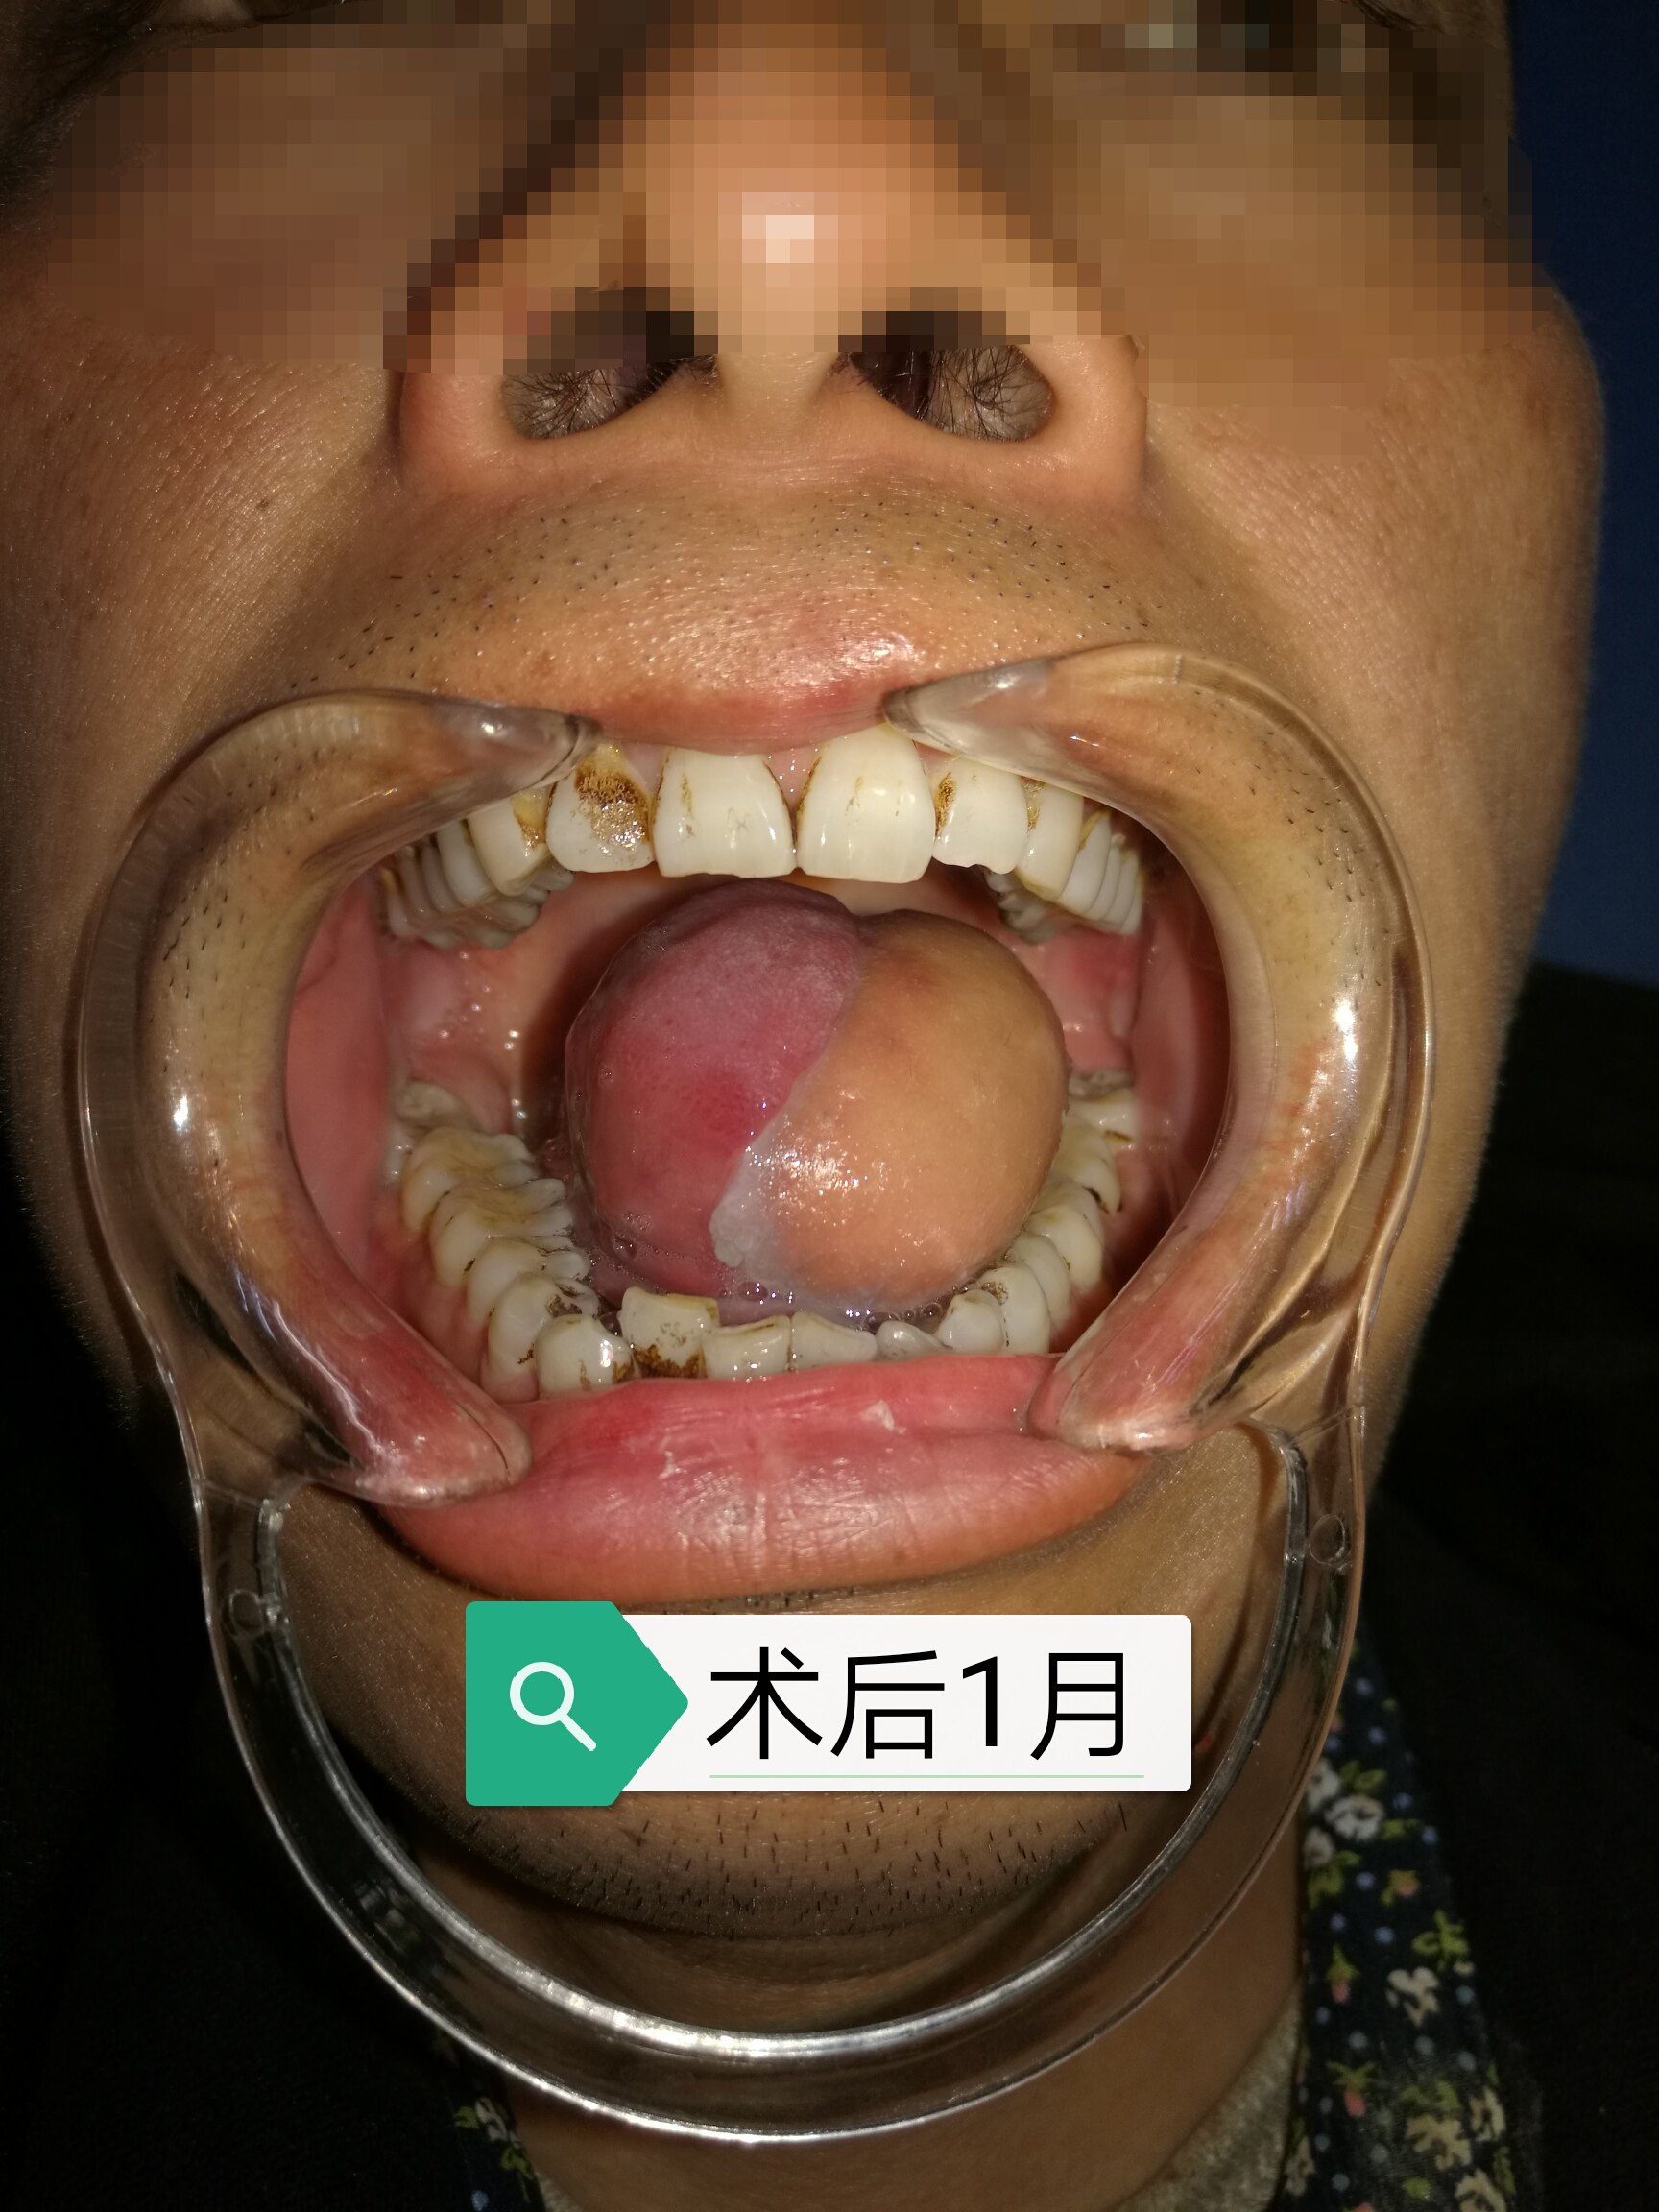 舌癌治疗方法图片